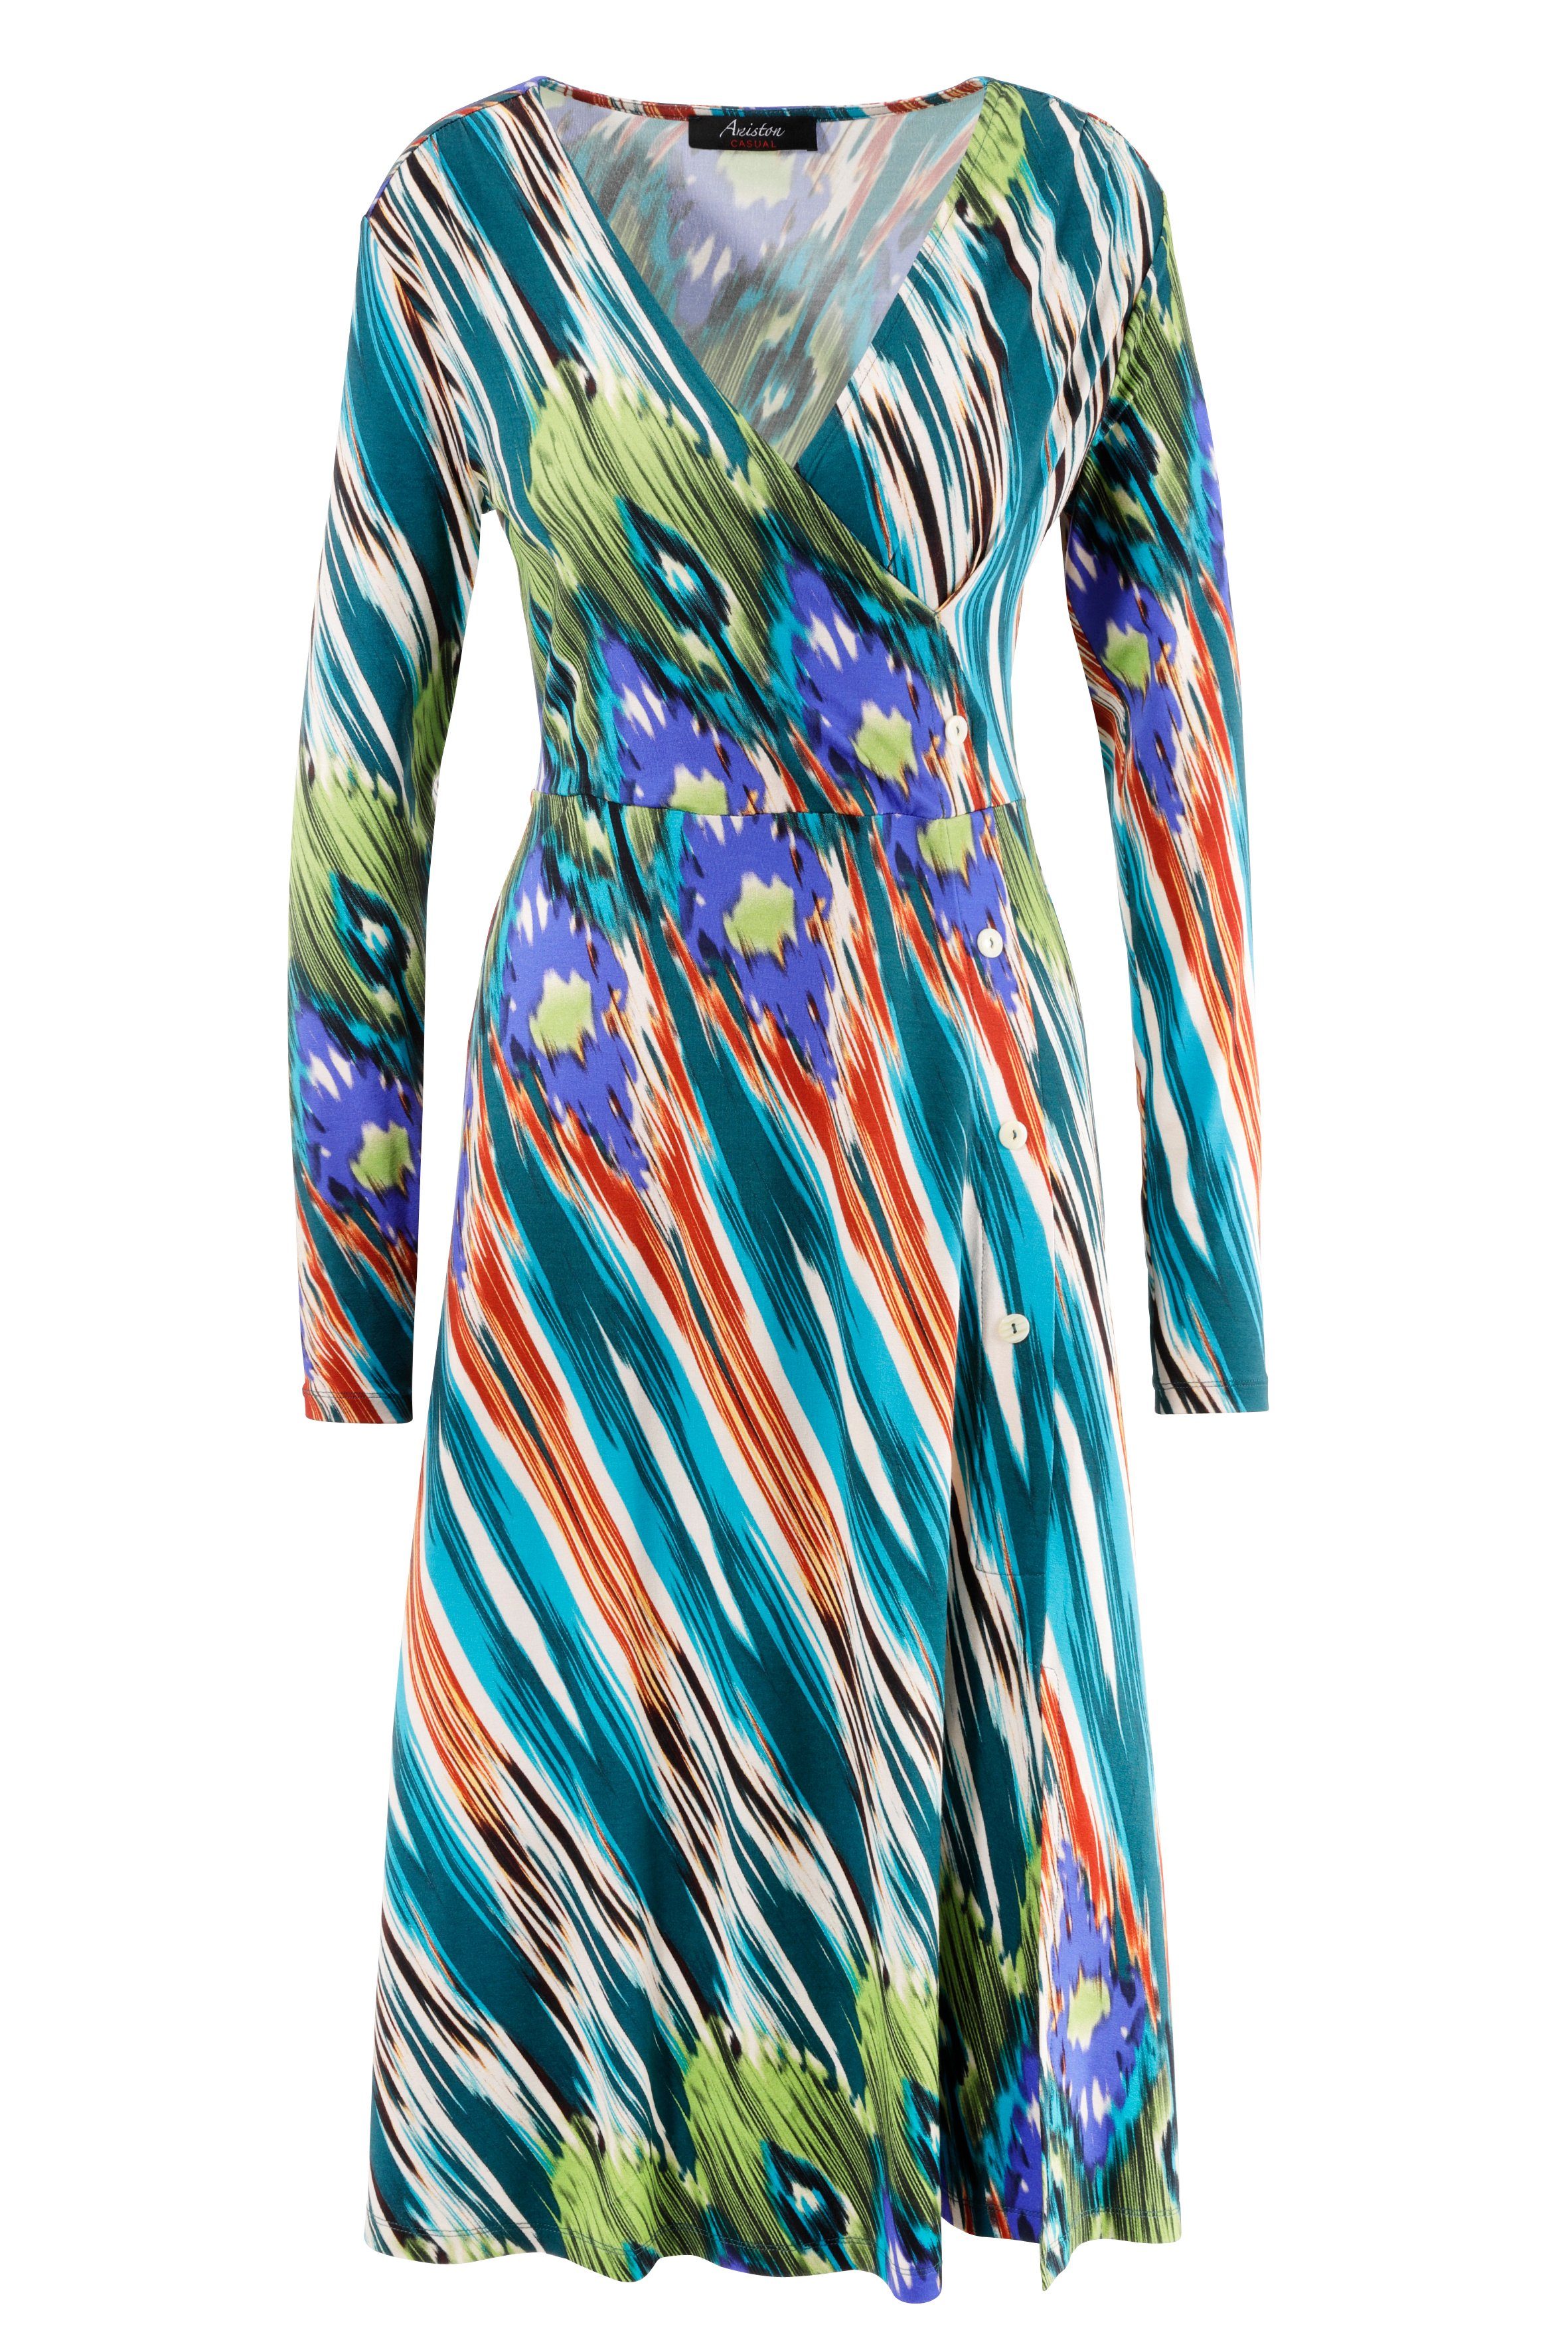 Aniston CASUAL Jerseykleid mit Ethno-Druck jedes Teil Unikat ein farbenfrohem 